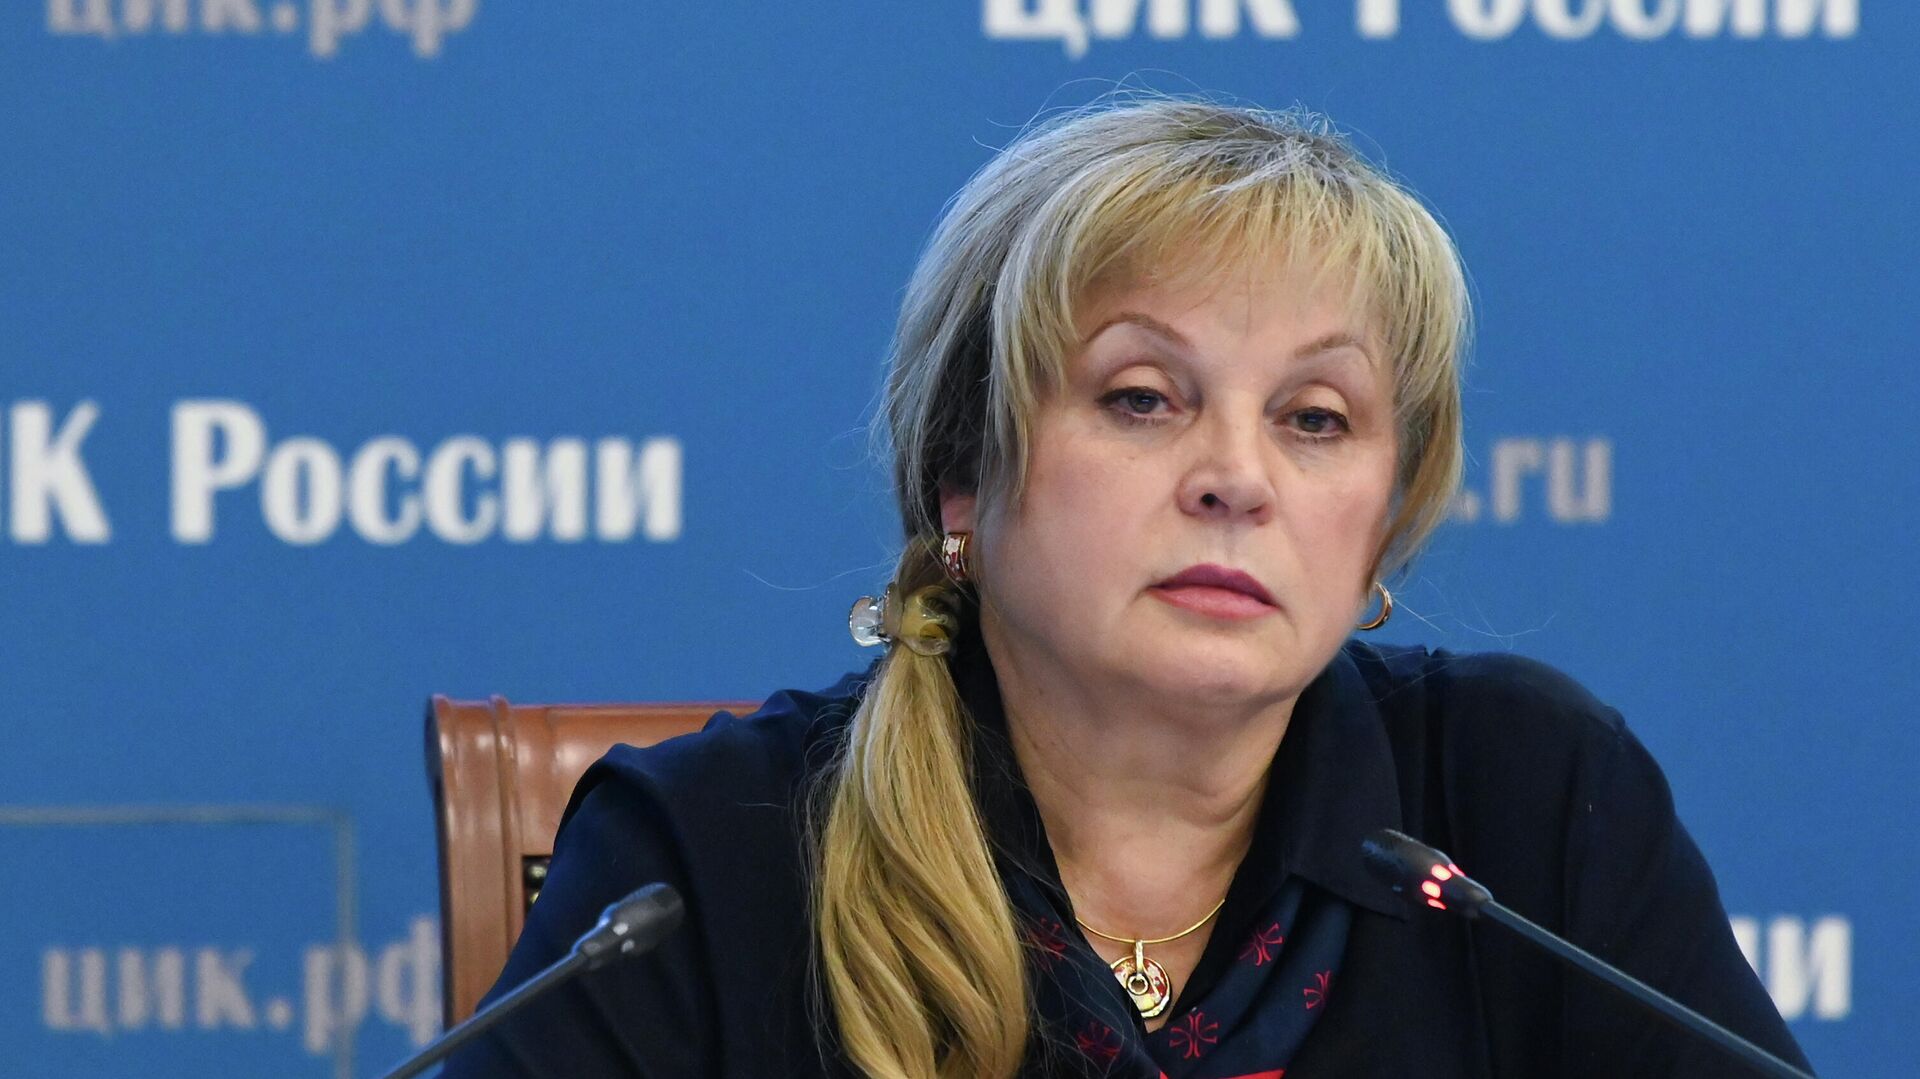 Глава ЦИК назвала дважды проголосовавшую россиянку рецидивисткой